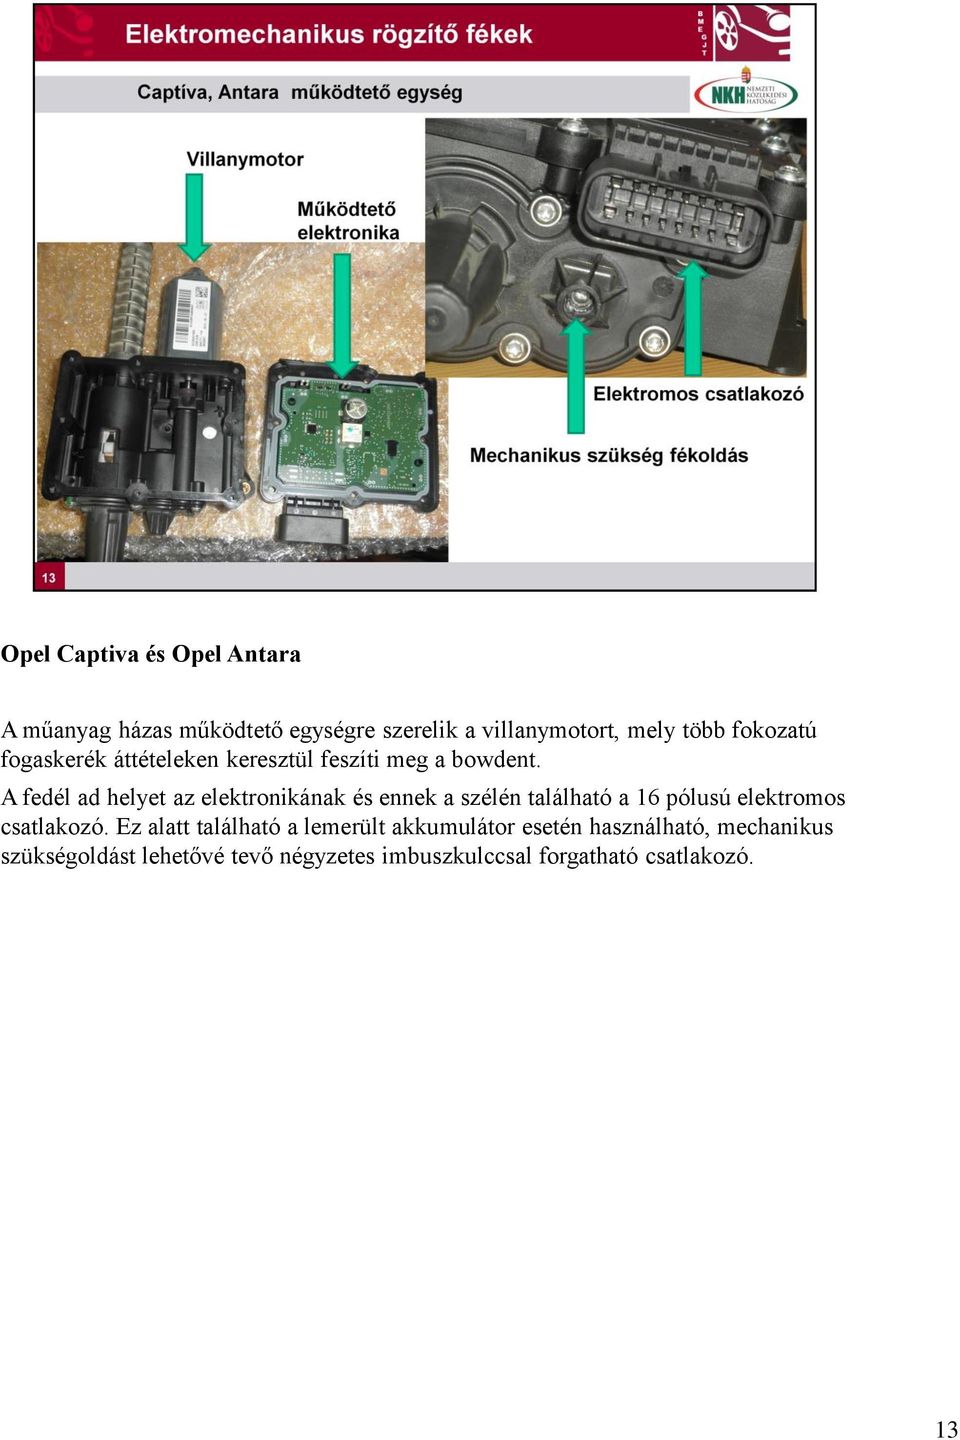 VIZSGABIZTOSKÉPZÉS Elektromos rögzítőfék-rendszerek vizsgálata. Budapest,  Kőfalusi Pál. Szintentartó III. képzés - PDF Ingyenes letöltés